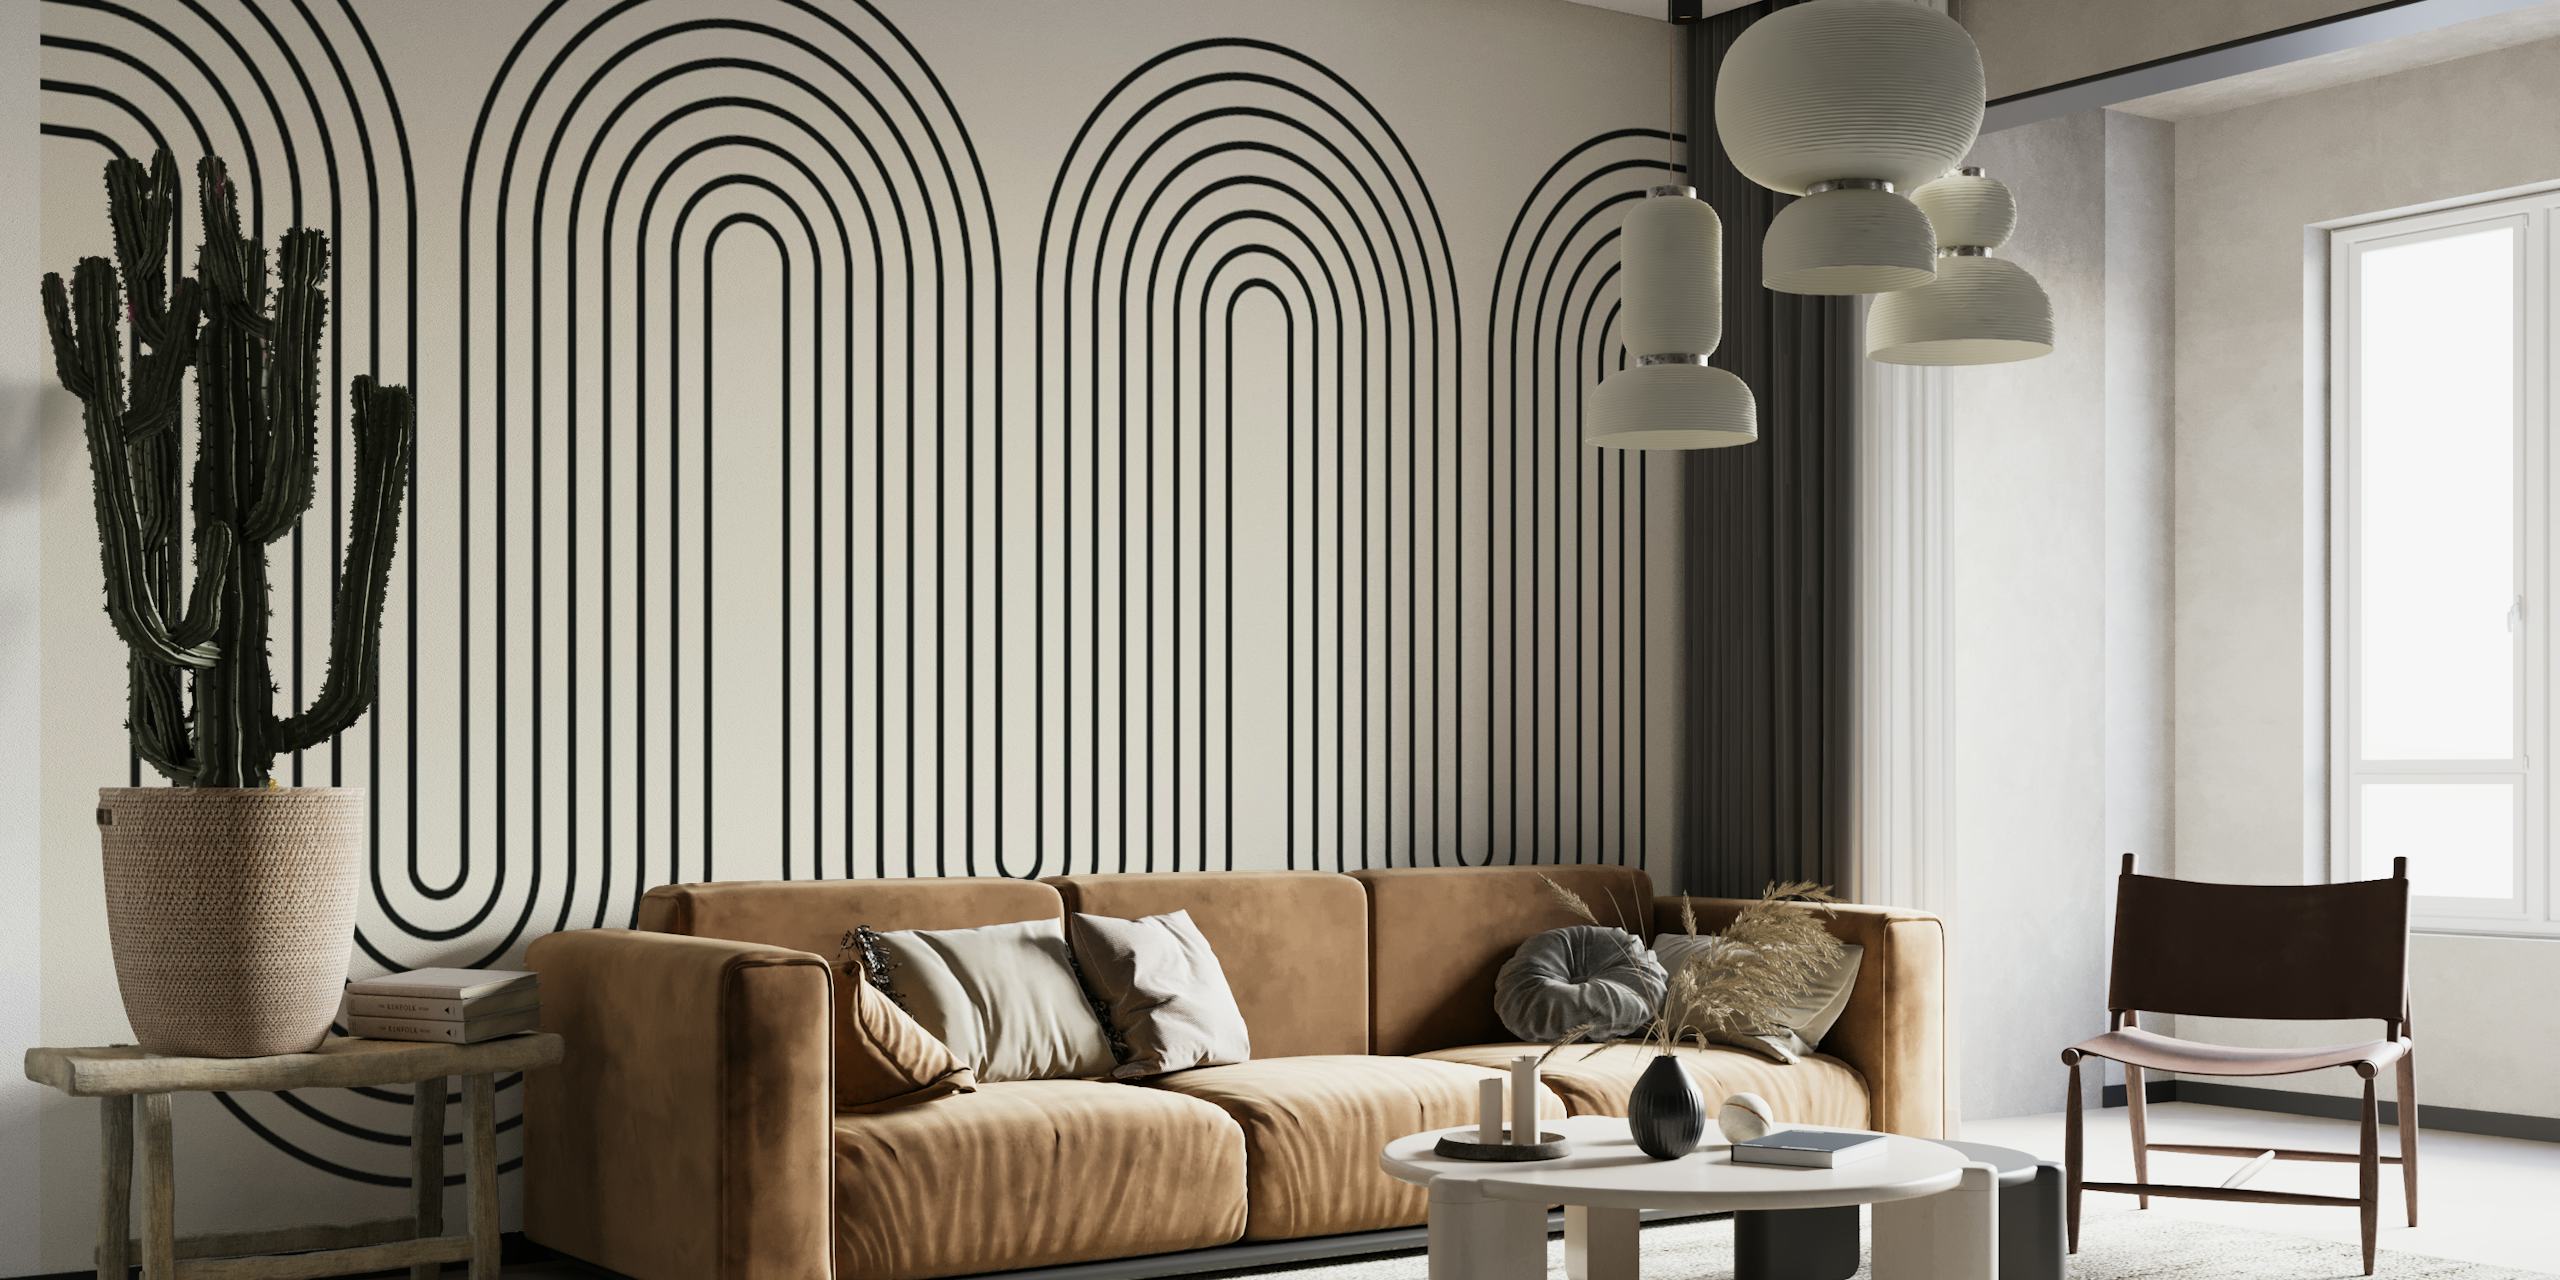 Papier peint mural moderne et minimaliste avec lignes ondulées dans des tons de gris